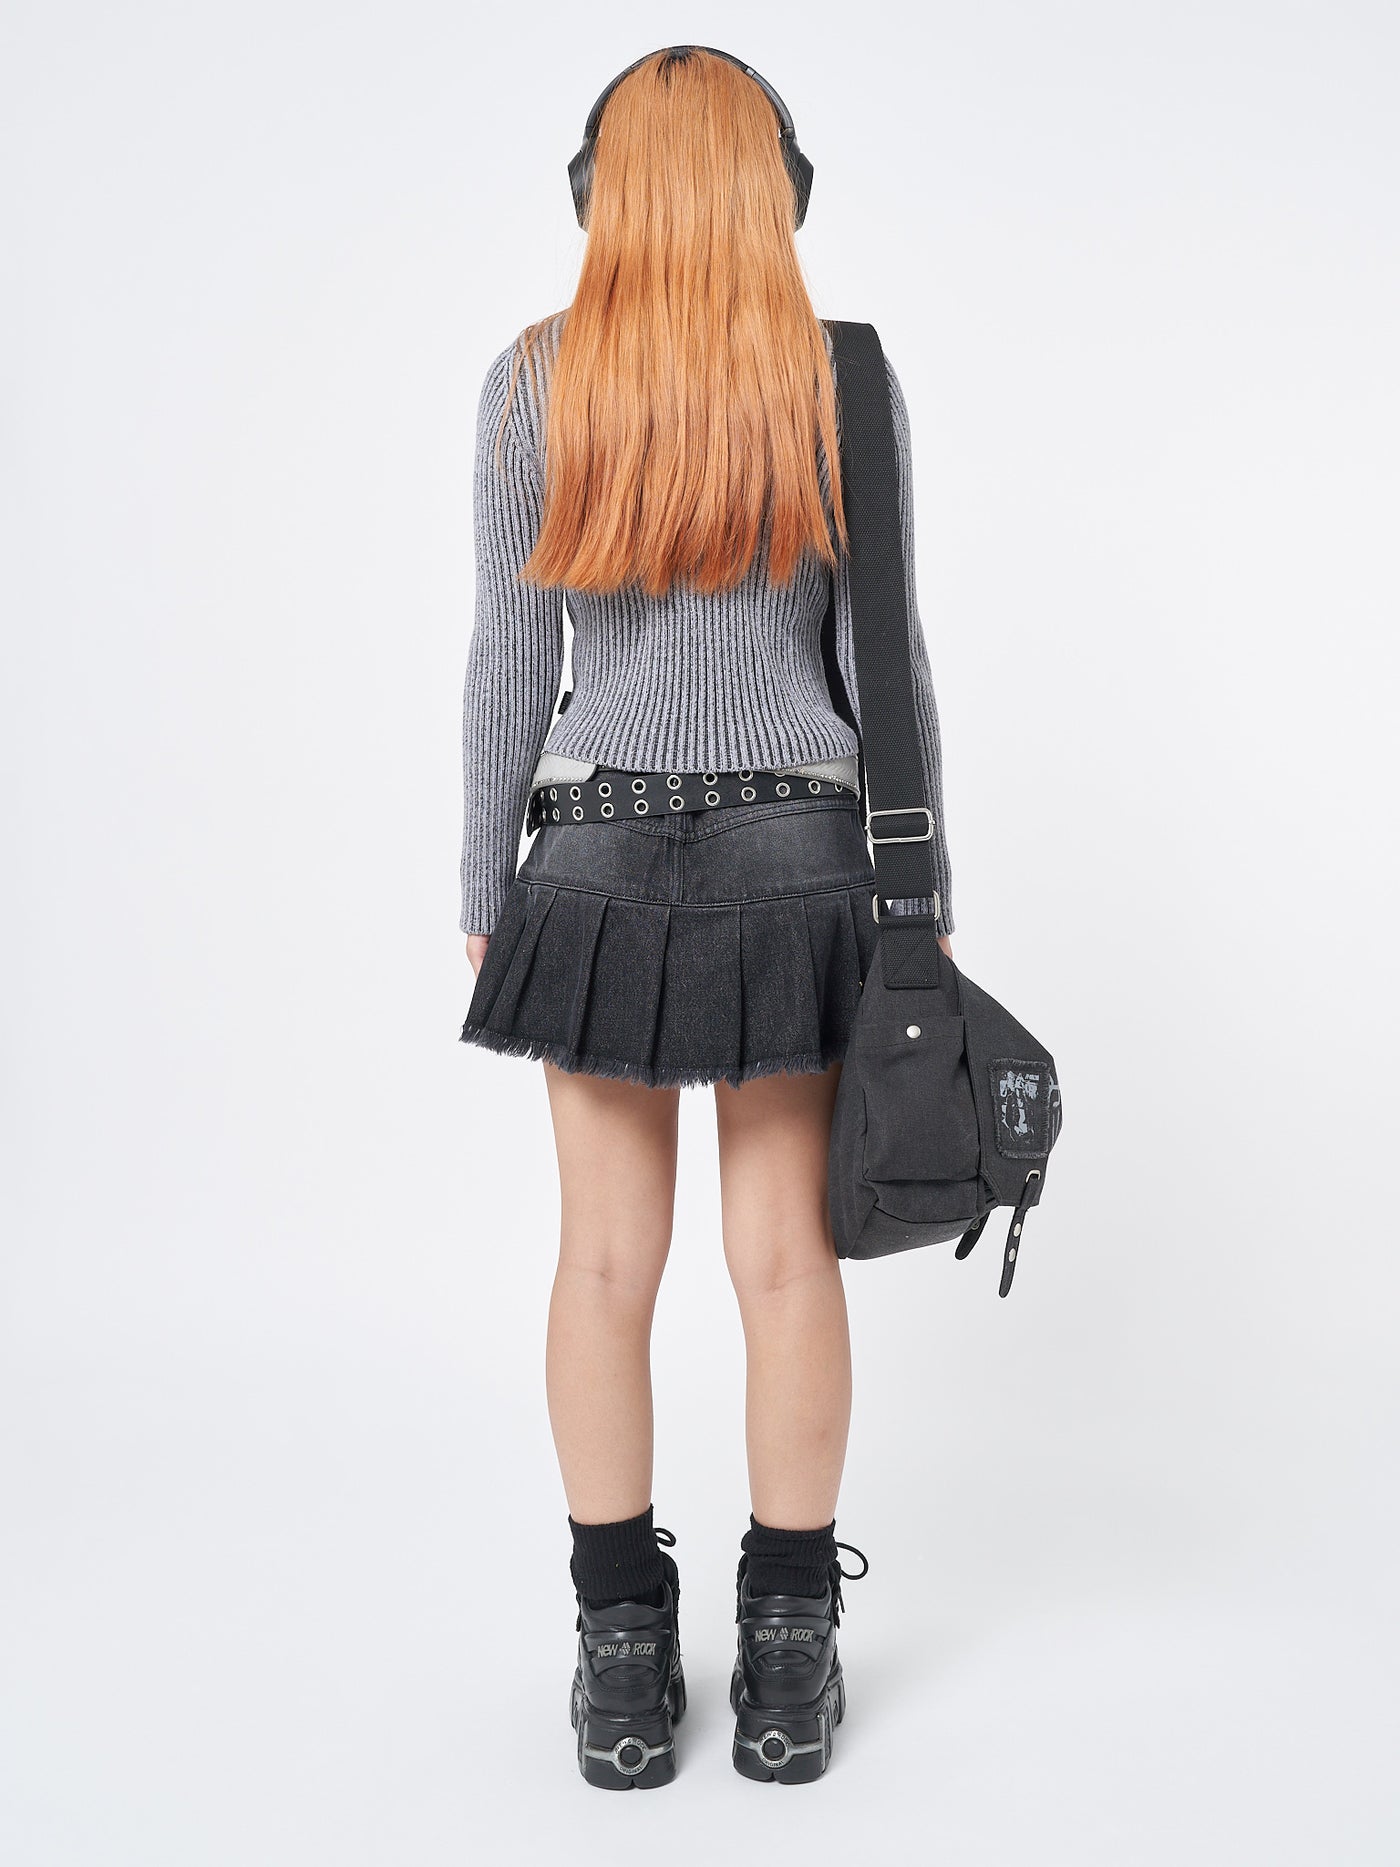 Nya Black Pleated Mini Skirt - Minga London